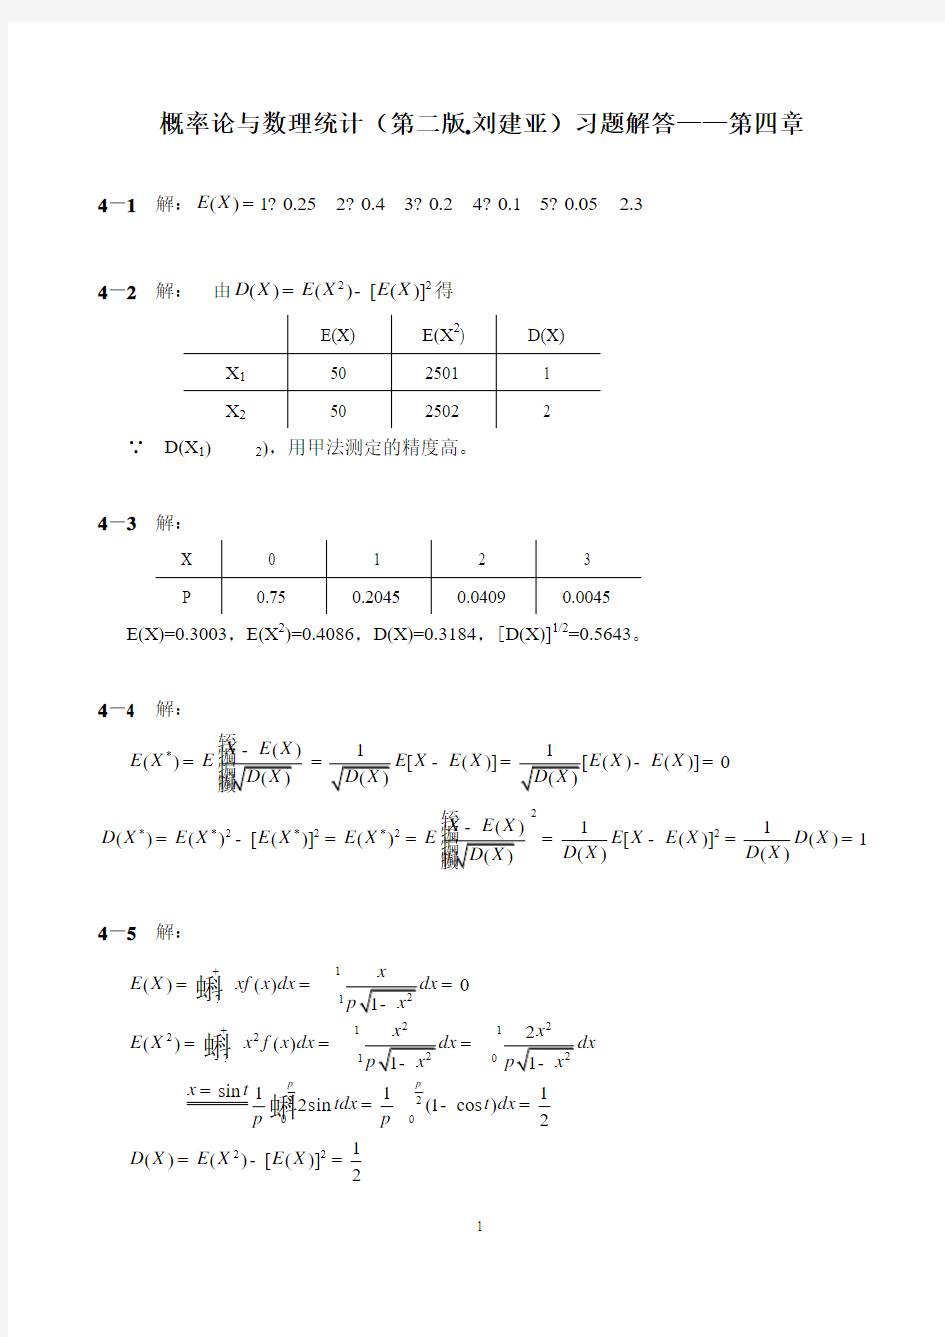 概率论与数理统计(第二版-刘建亚)习题解答——第4章